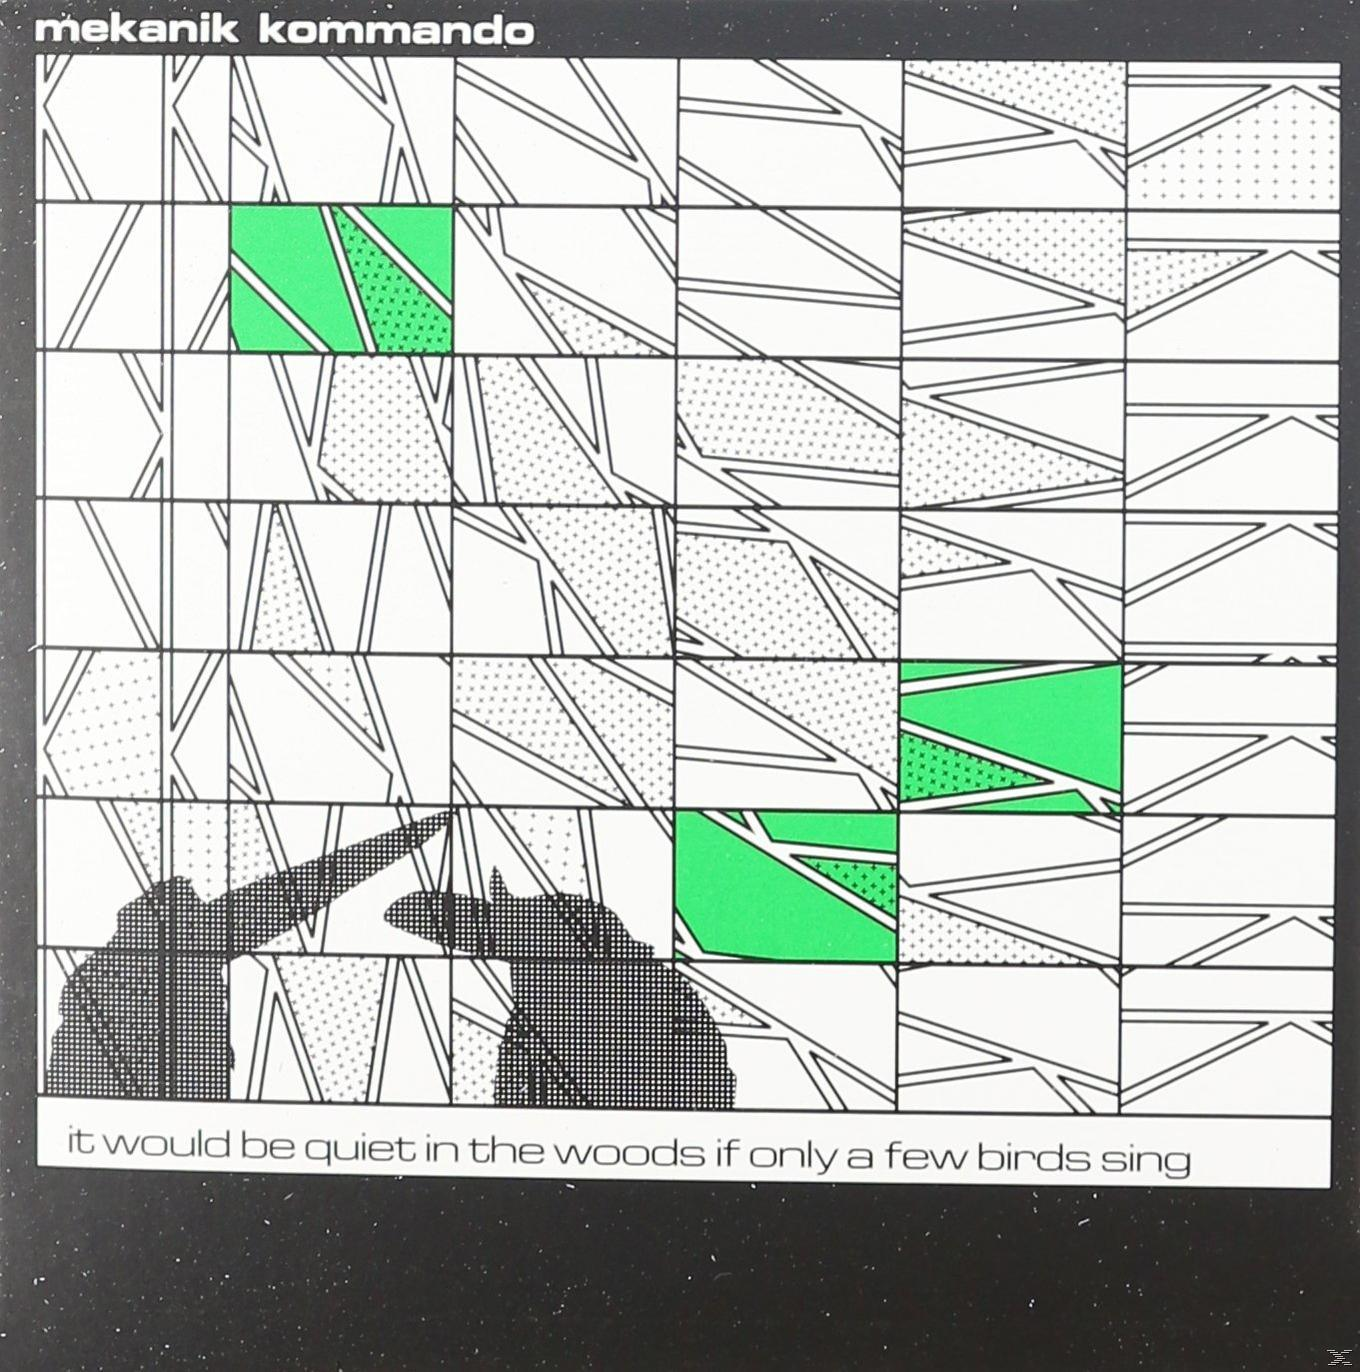 Mekanik Kommando Sing Few - A Would It The Be - Only Birds (CD) Woods If